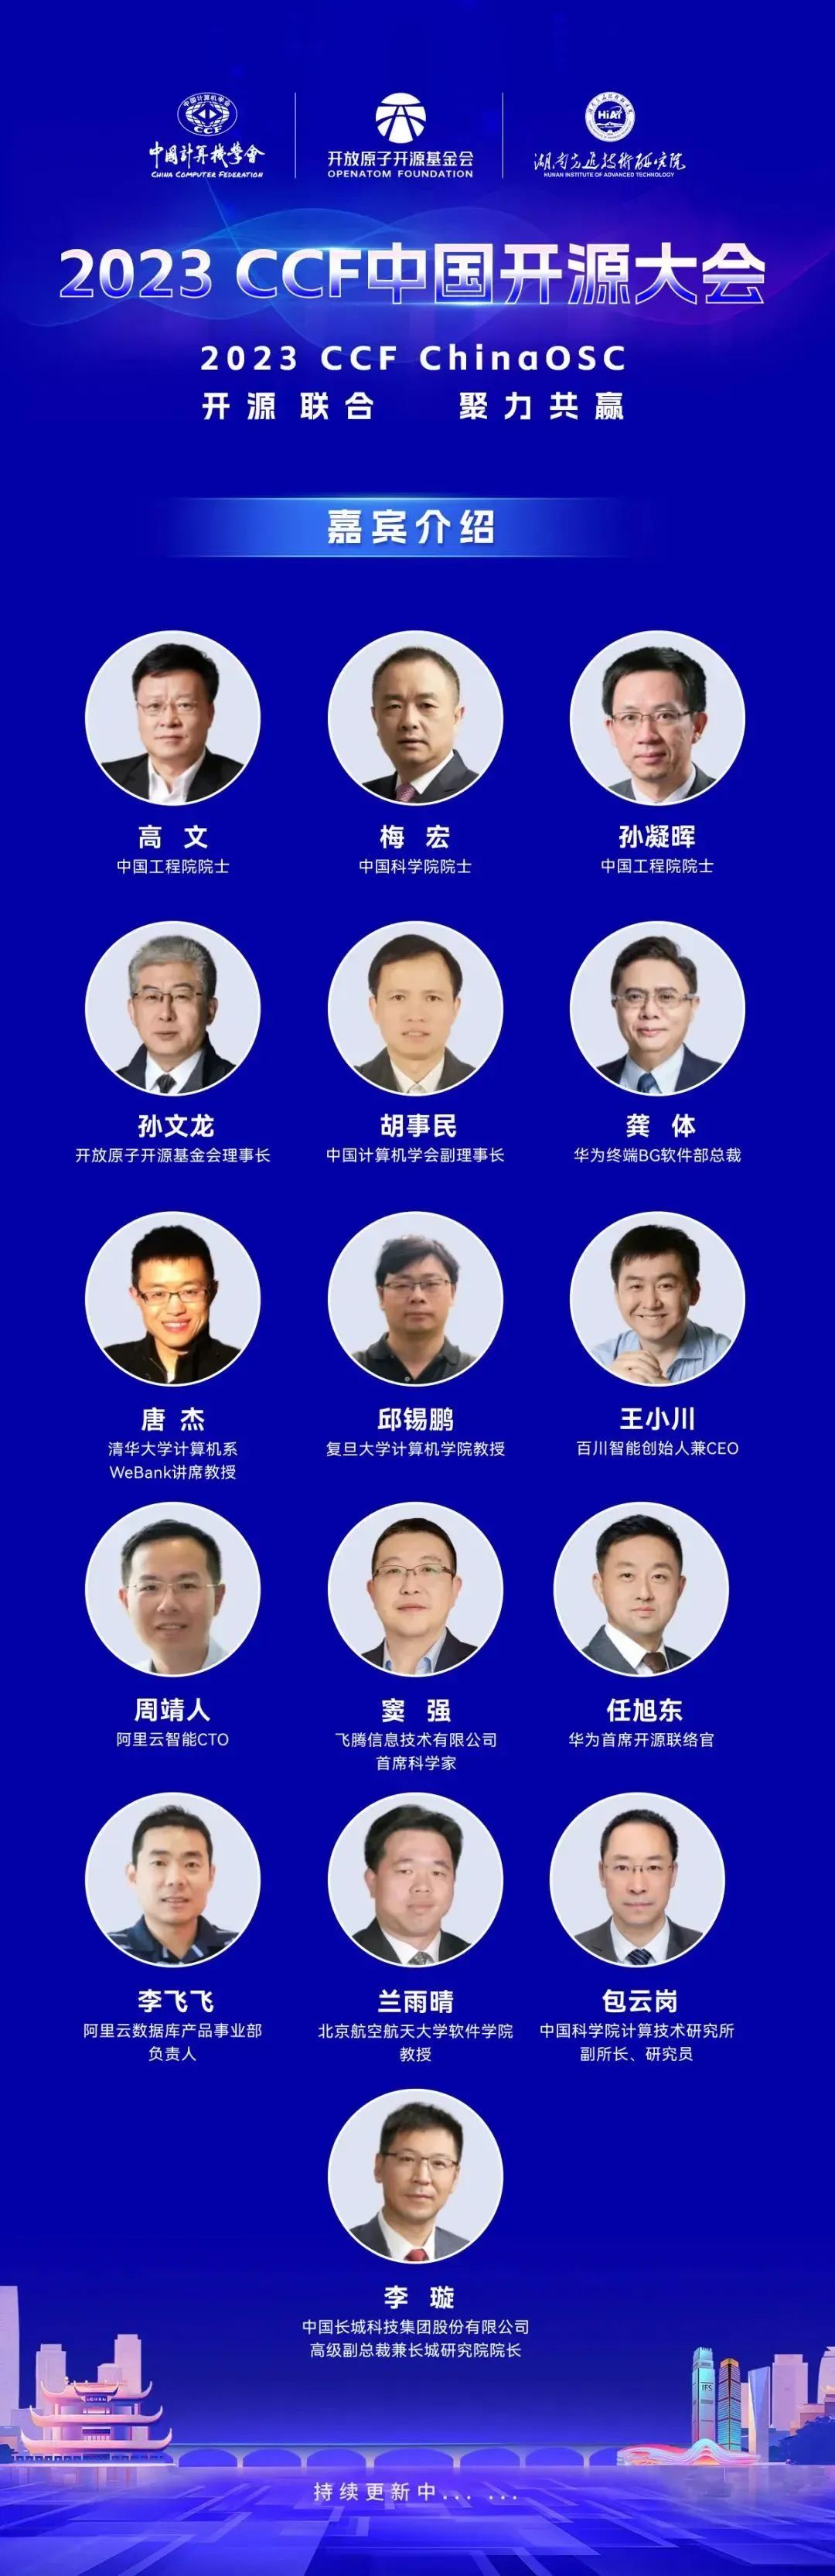 开放原子开源基金会联合主办的2023 CCF中国开源大会即将开幕-鸿蒙开发者社区